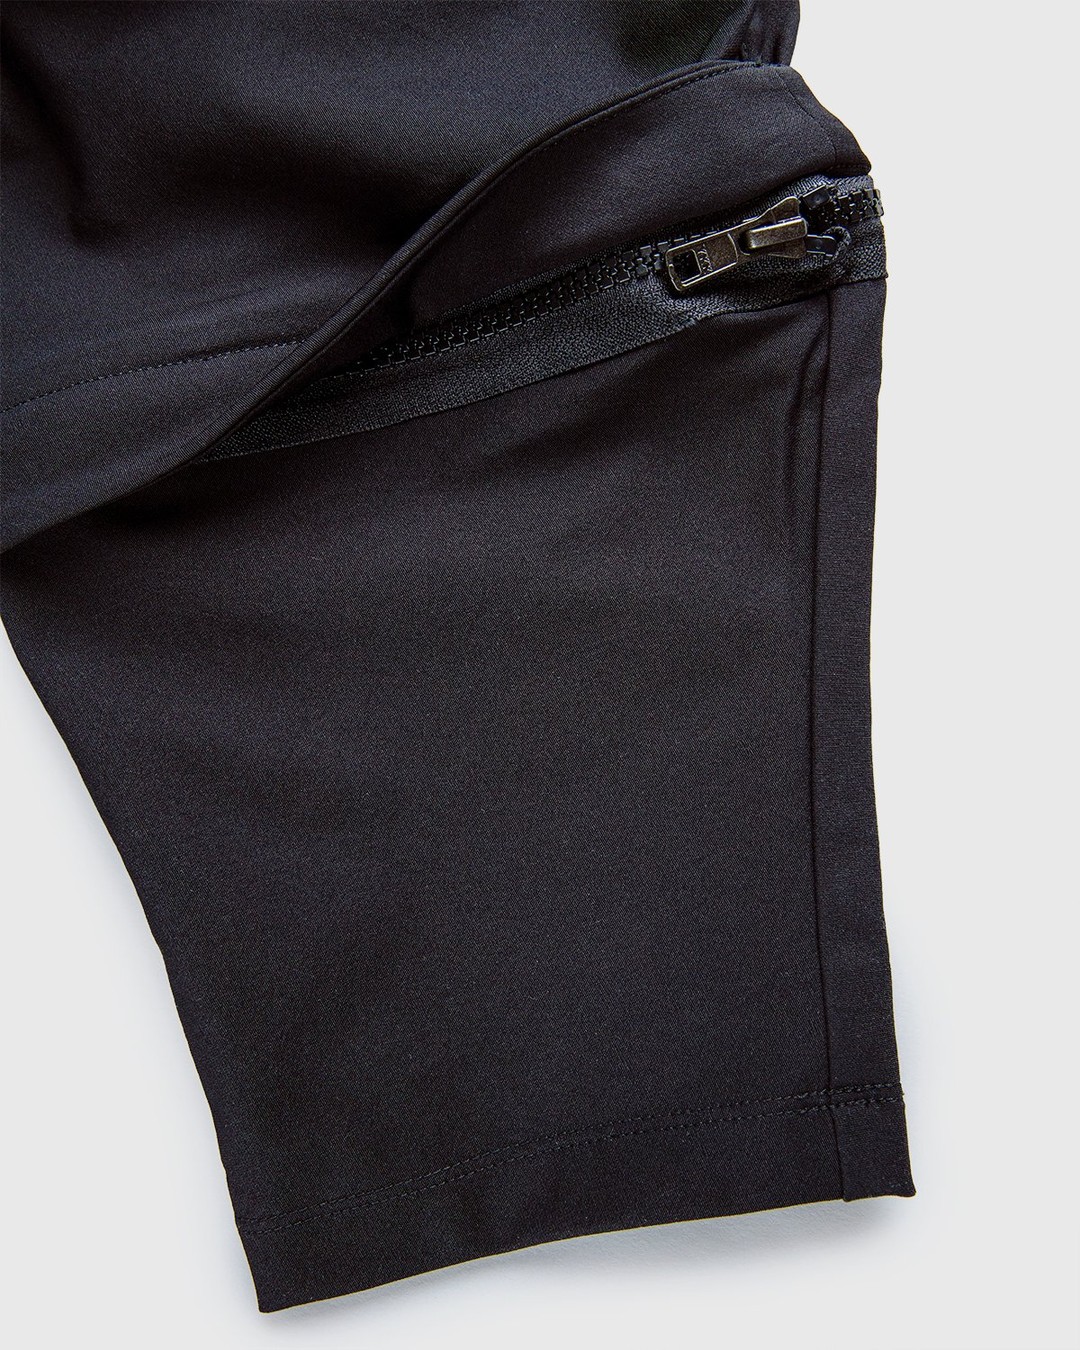 ACRONYM – P30A-DS Pants Black - Pants - Black - Image 7